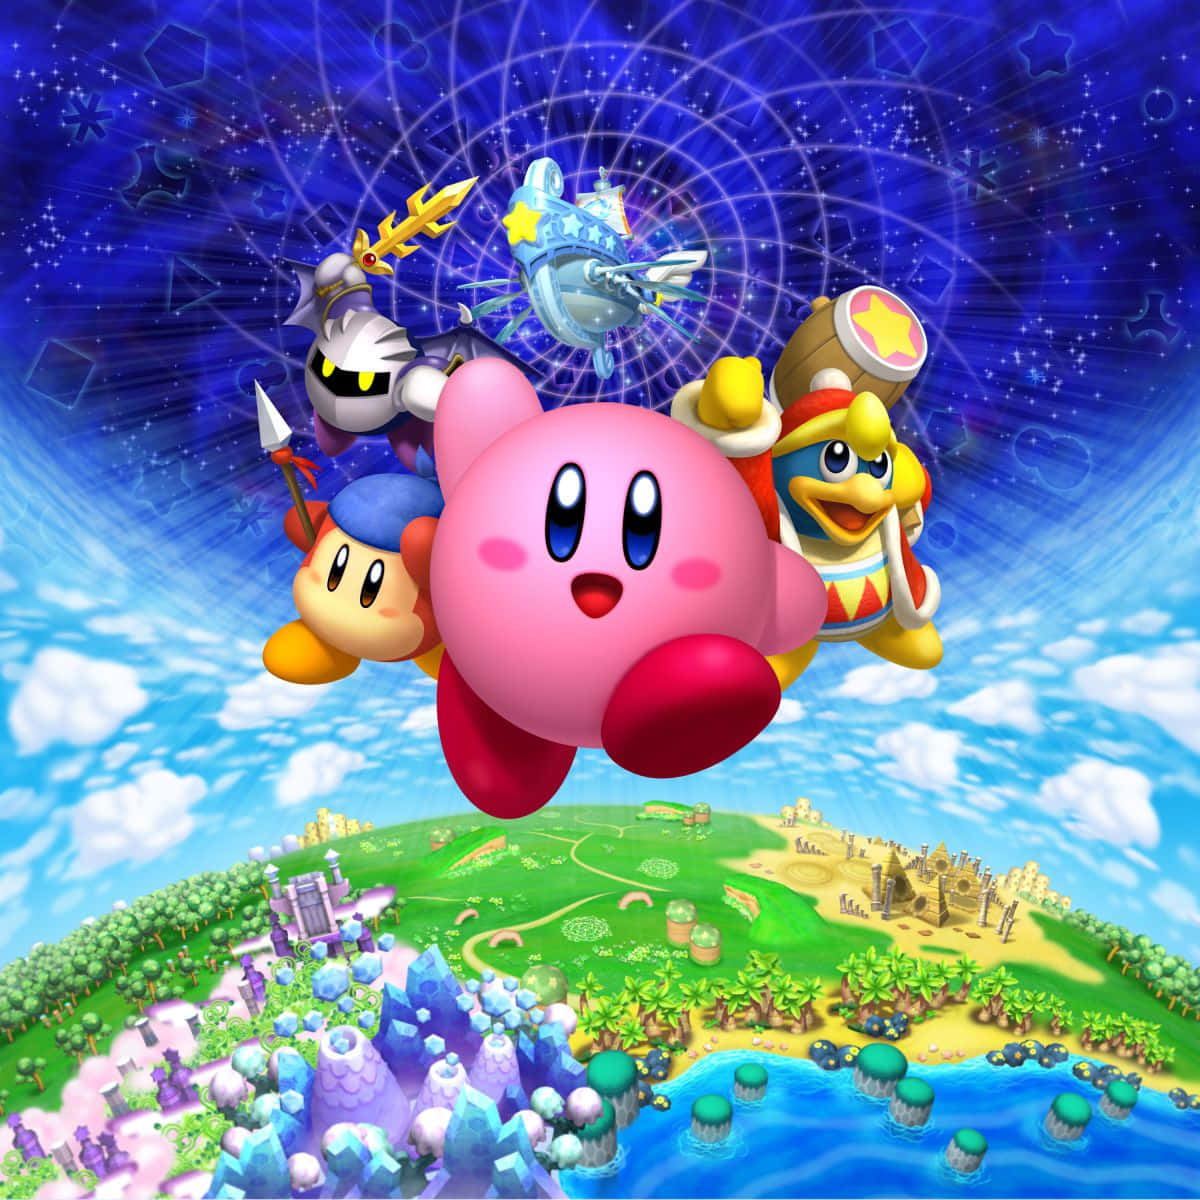 Derliebenswerte Kirby Zeigt Sein Breites Lächeln!